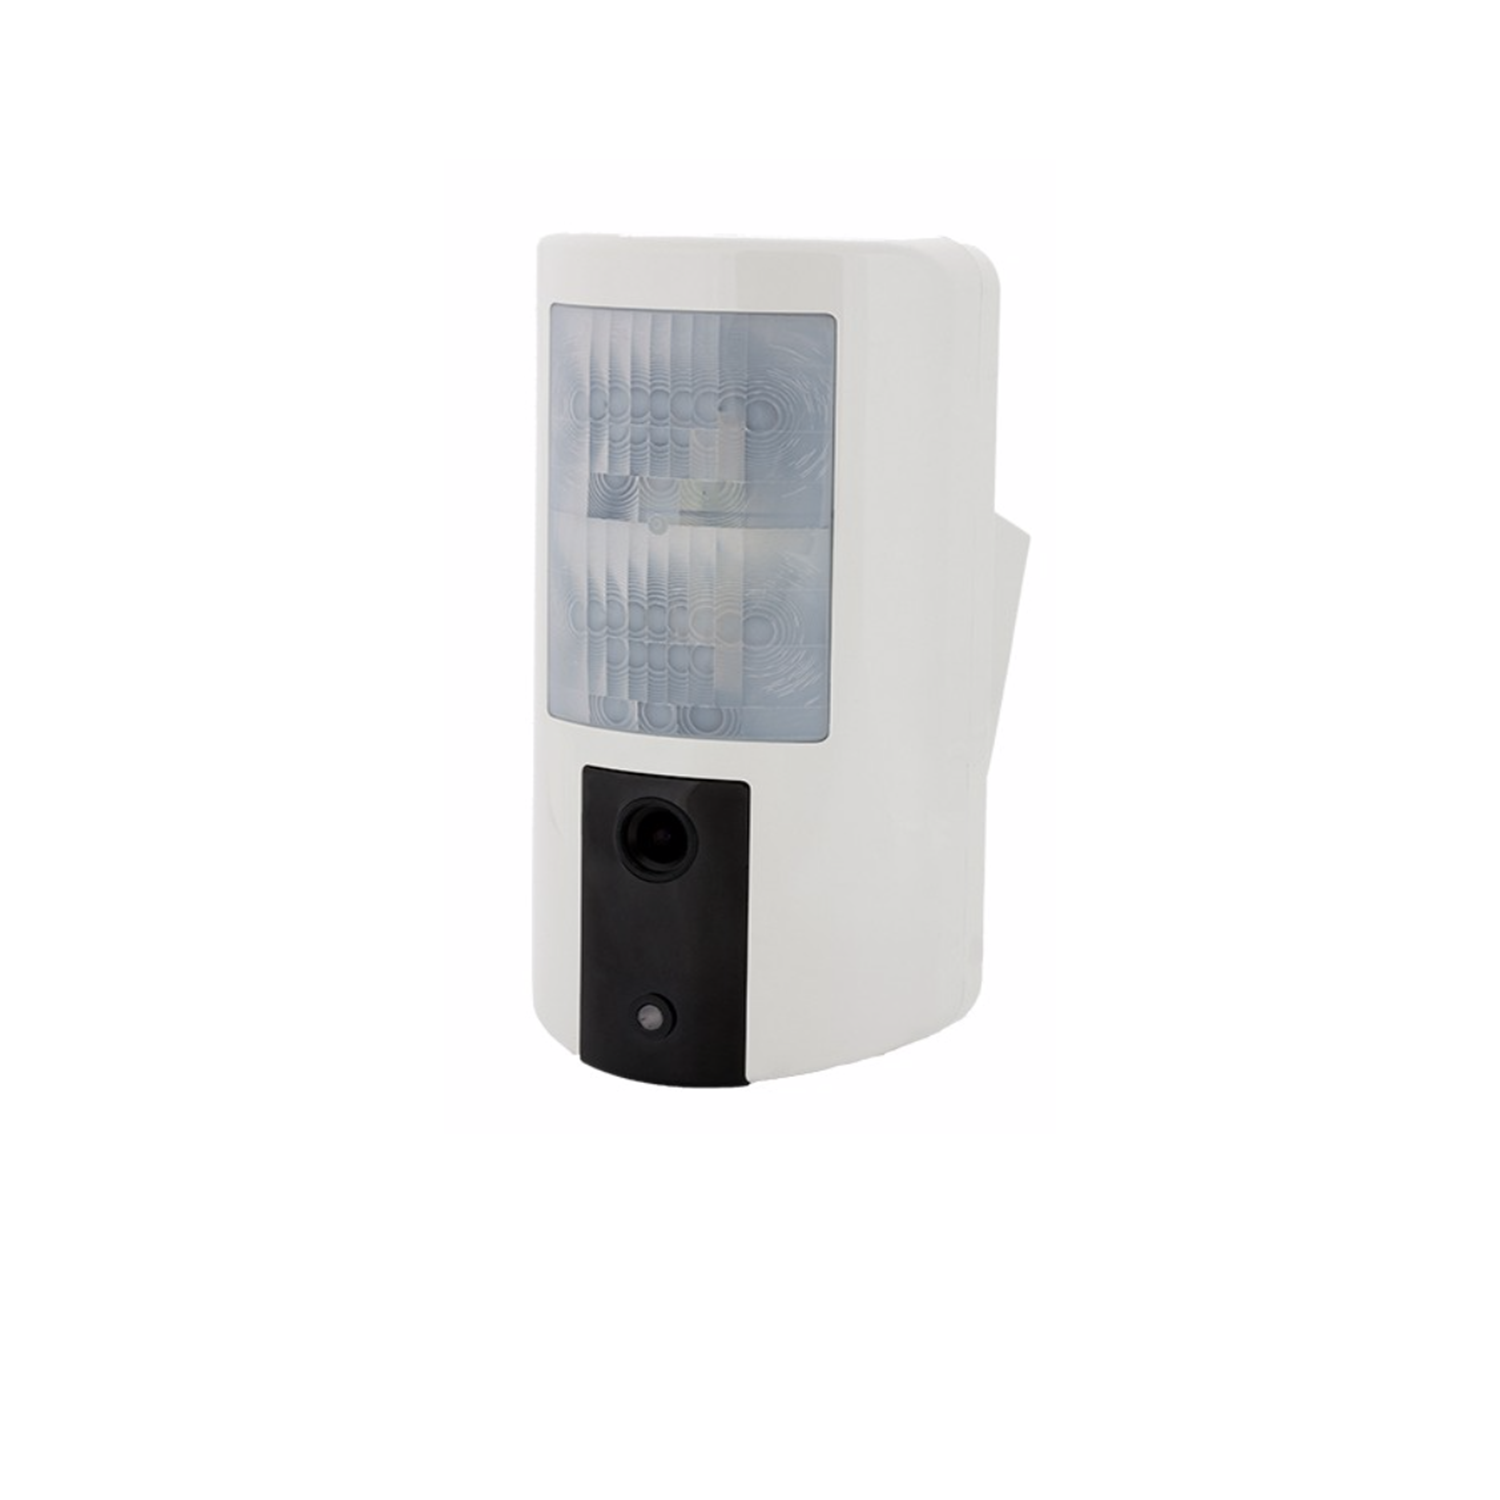 Secure one, Système alarme professionnel pour site sensible, Détecteur volumétrique extérieur avec camera intégré